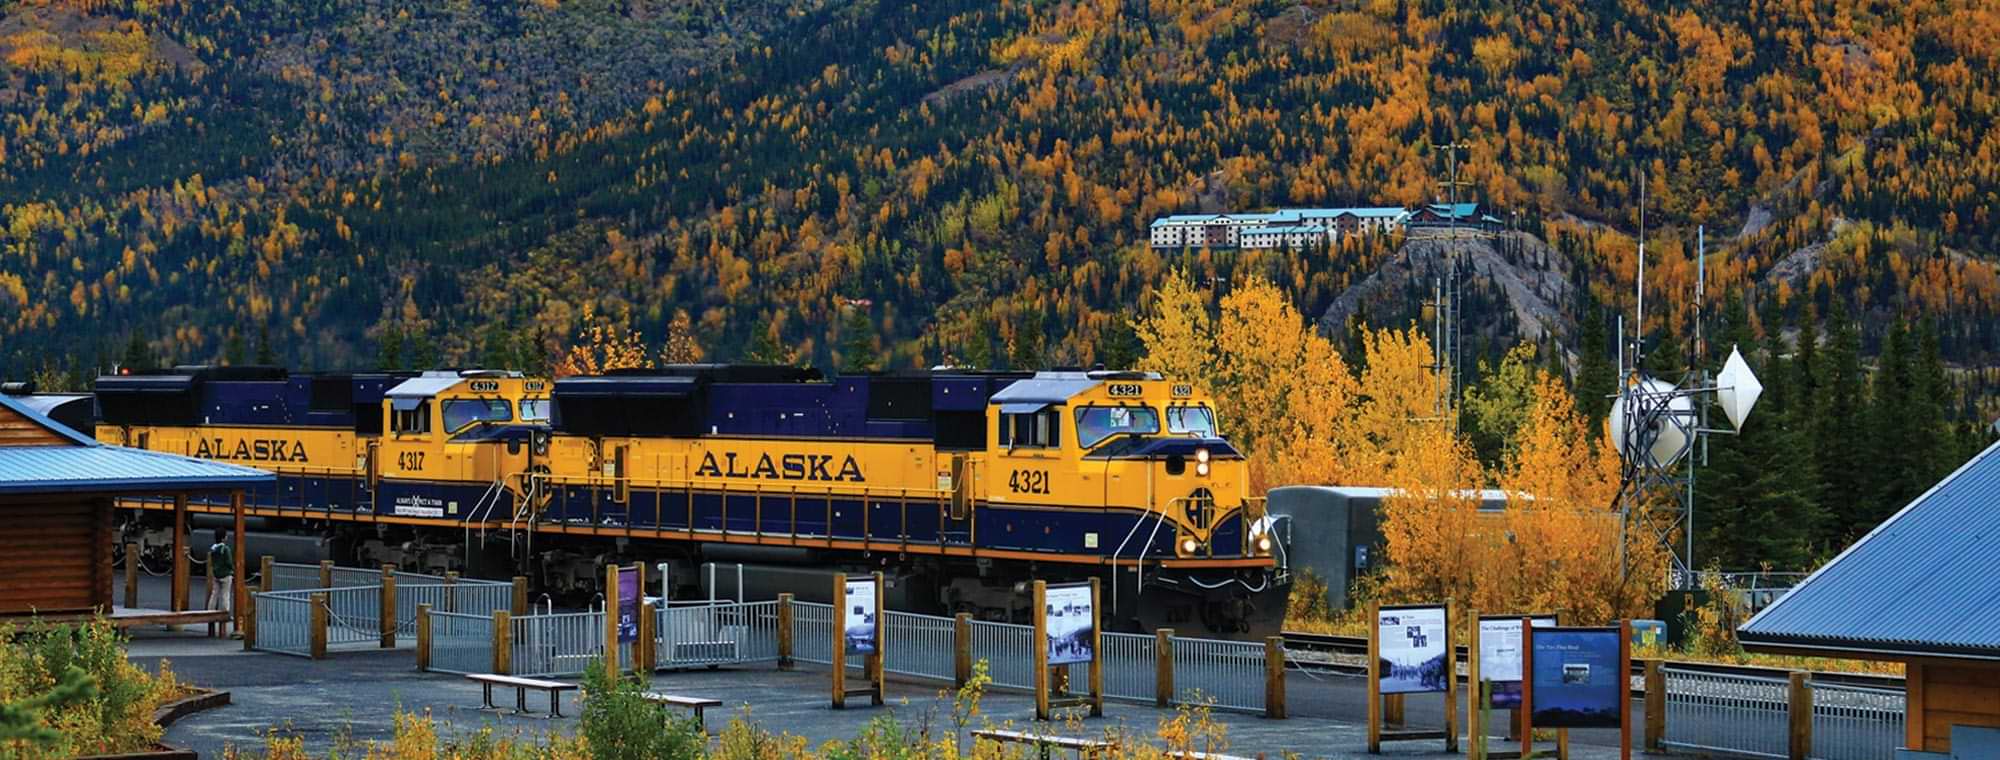 an Alaska Railroad train coming into a depot